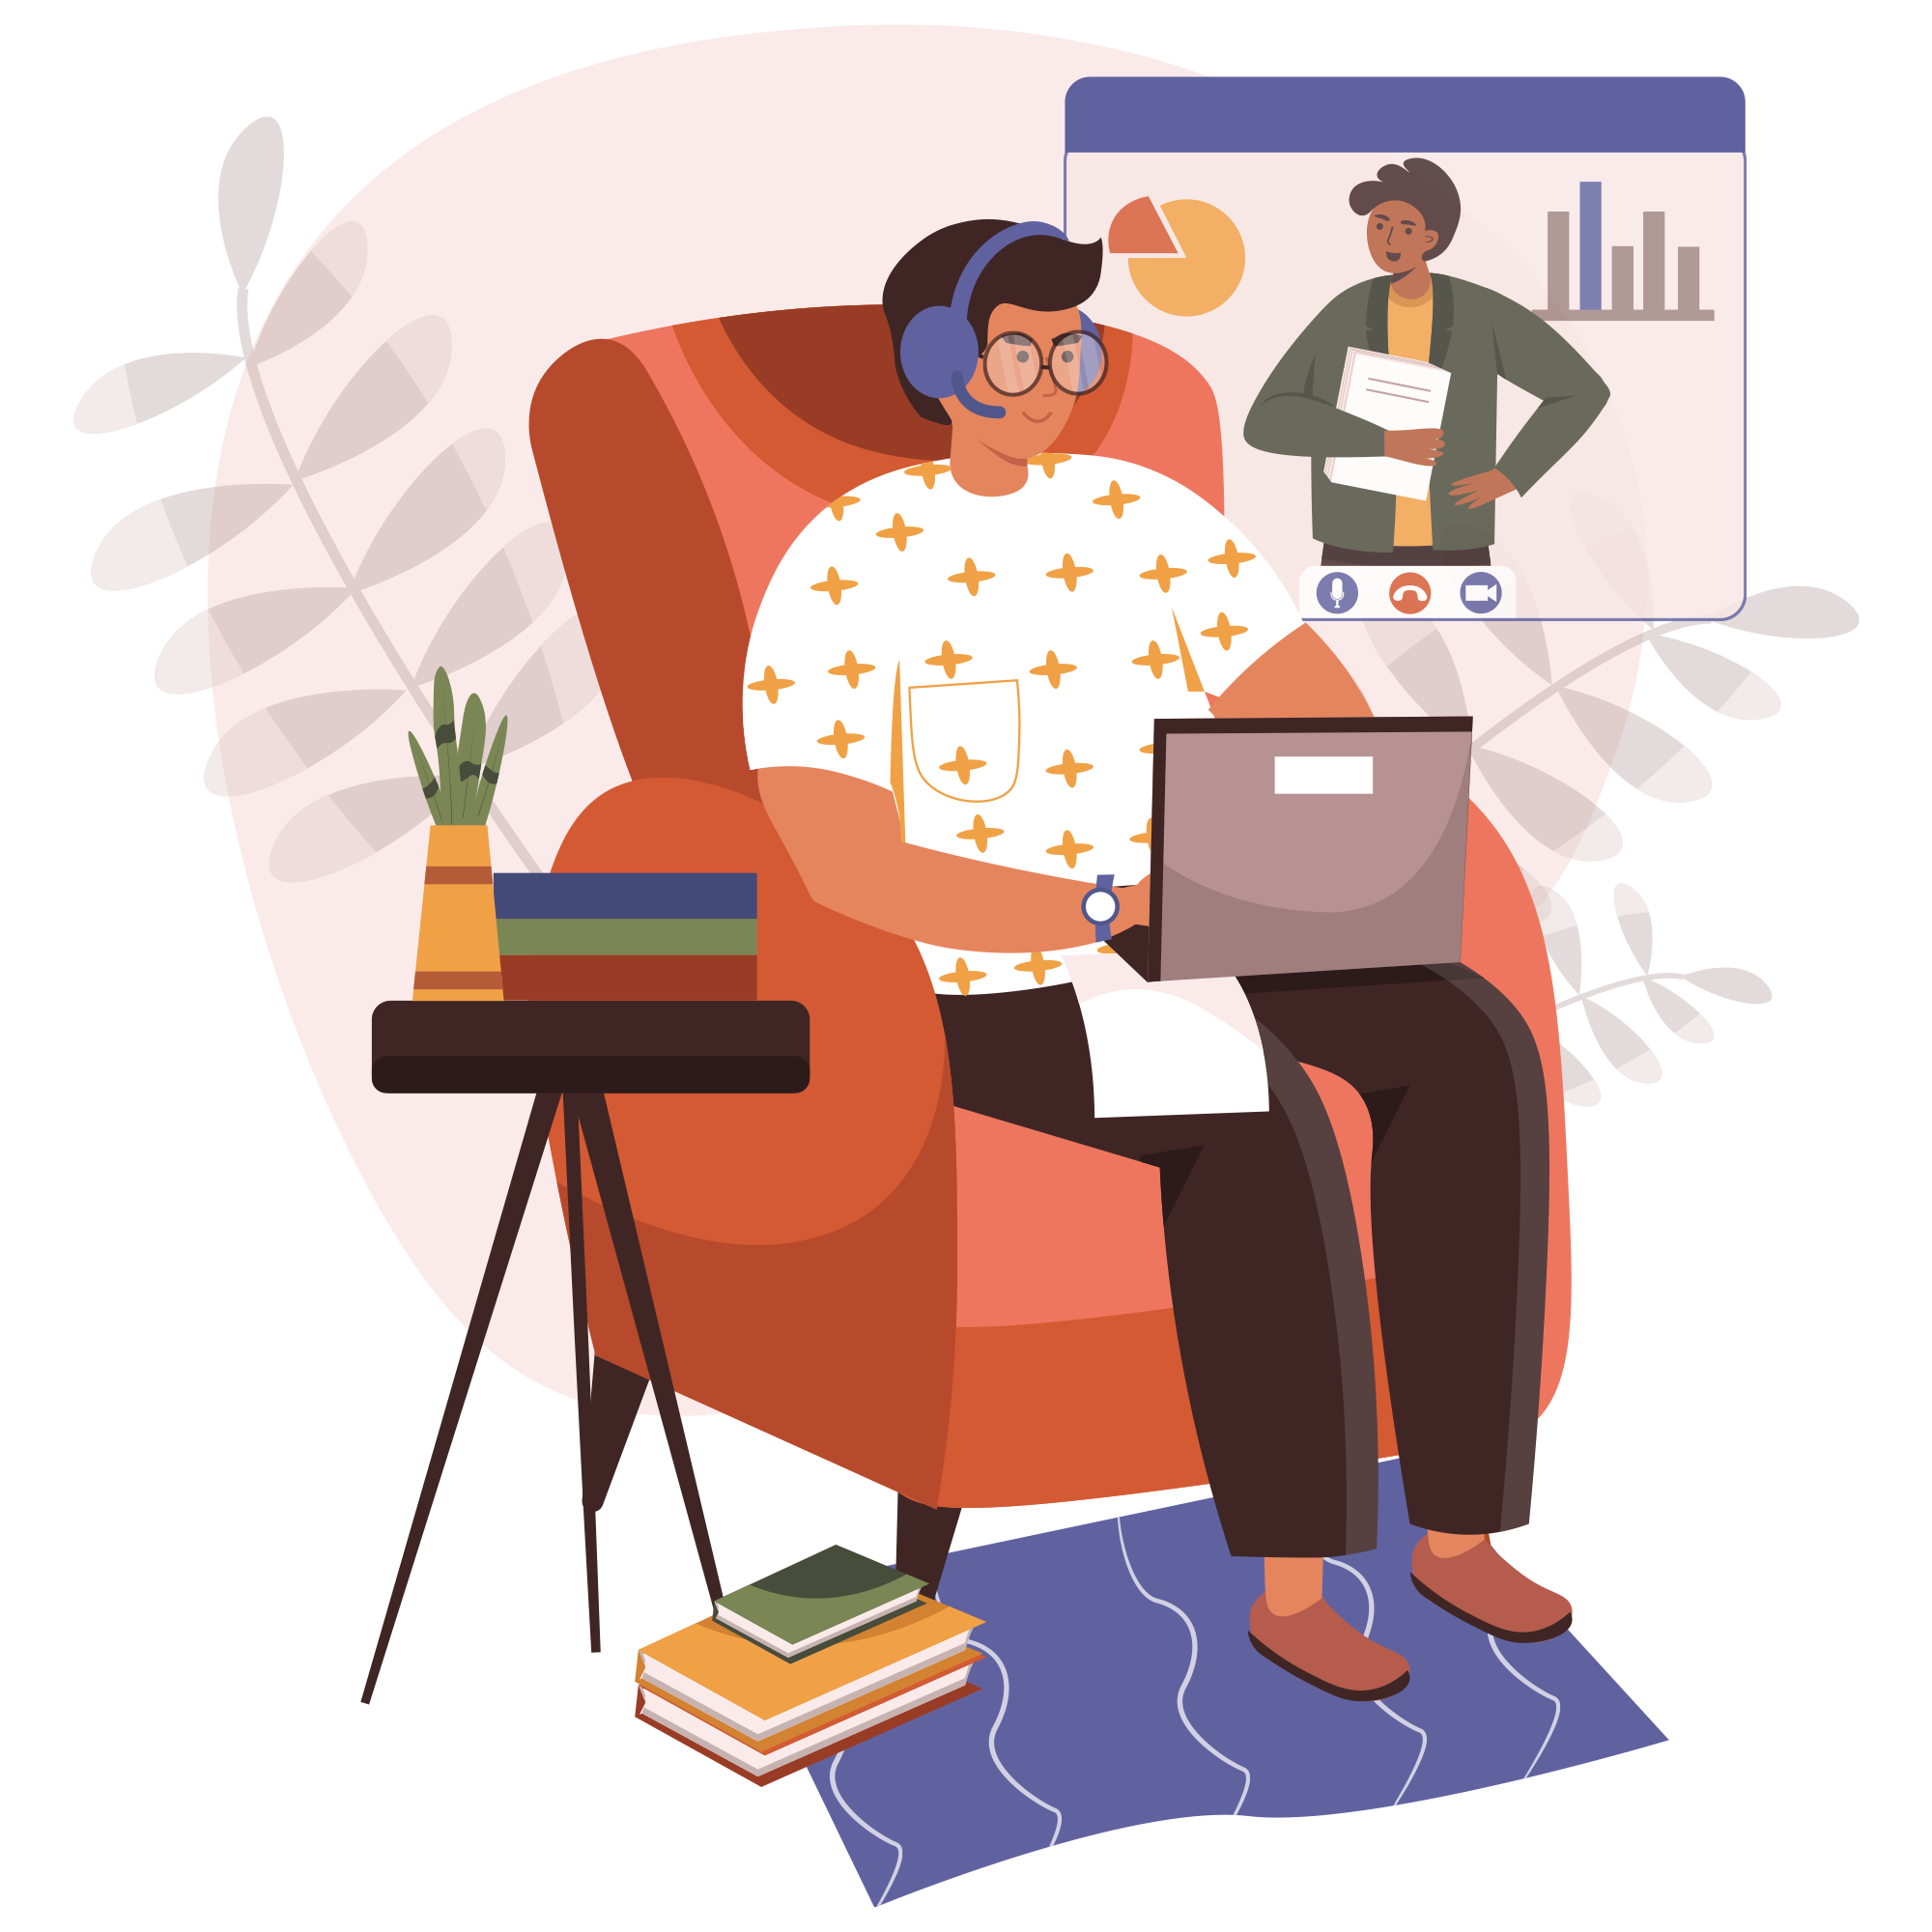 Ein illustriertes Bild zeigt eine Person, die in einem orangefarbenen Sessel sitzt und auf einem Laptop arbeitet. Ein virtuelles Meeting ist auf dem Bildschirm zu sehen, und neben dem Sessel steht ein kleines Tischchen mit Pflanzen und Büchern.